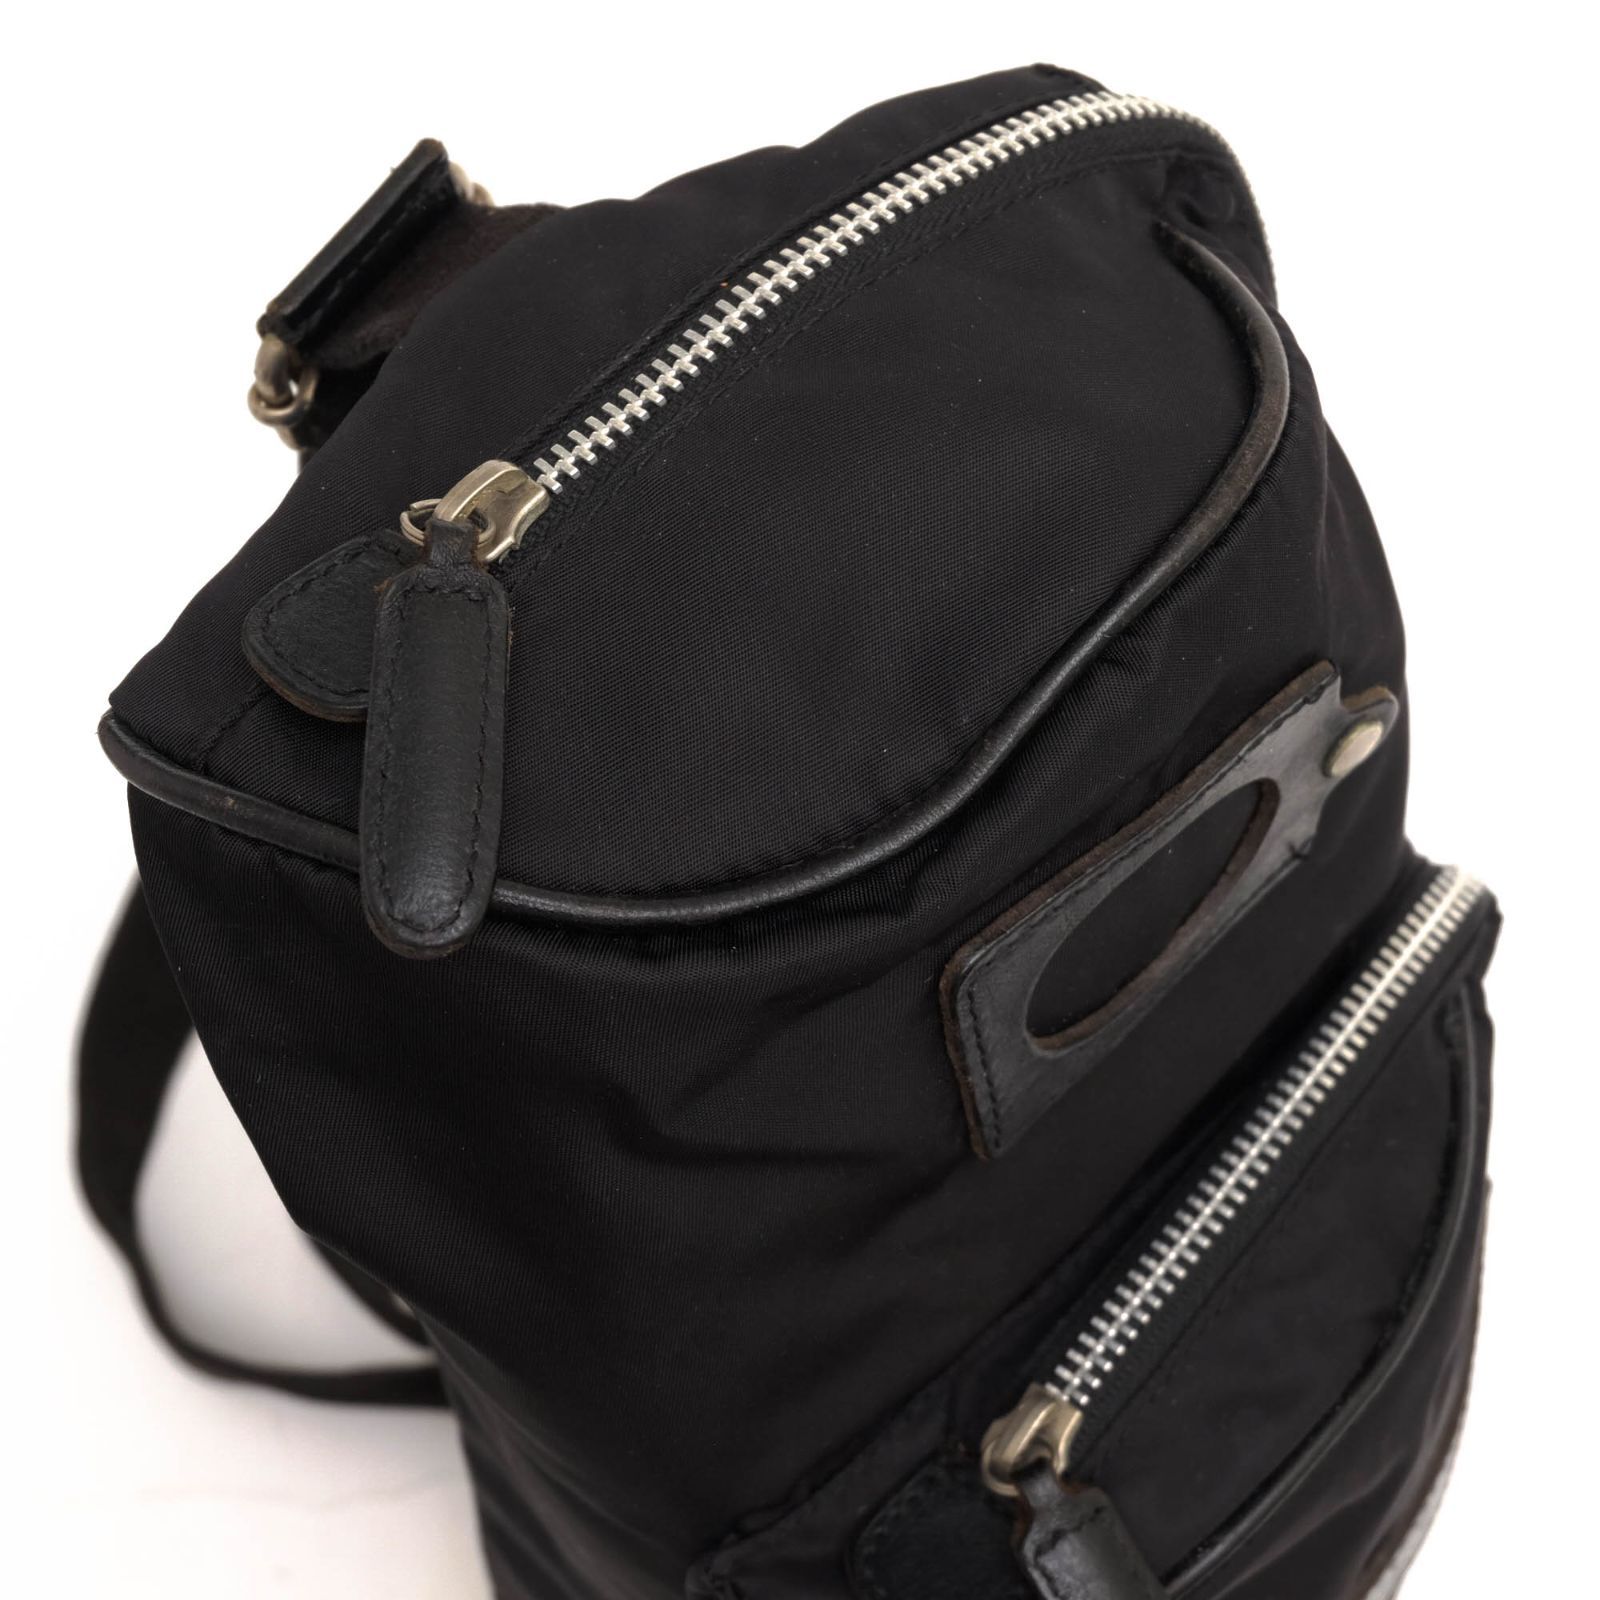 フェリージ／Felisi バッグ ショルダーバッグ 鞄 メンズ 男性 男性用ナイロン レザー 革 本革 ブラック 黒 F99114 ボディバッグ 定番